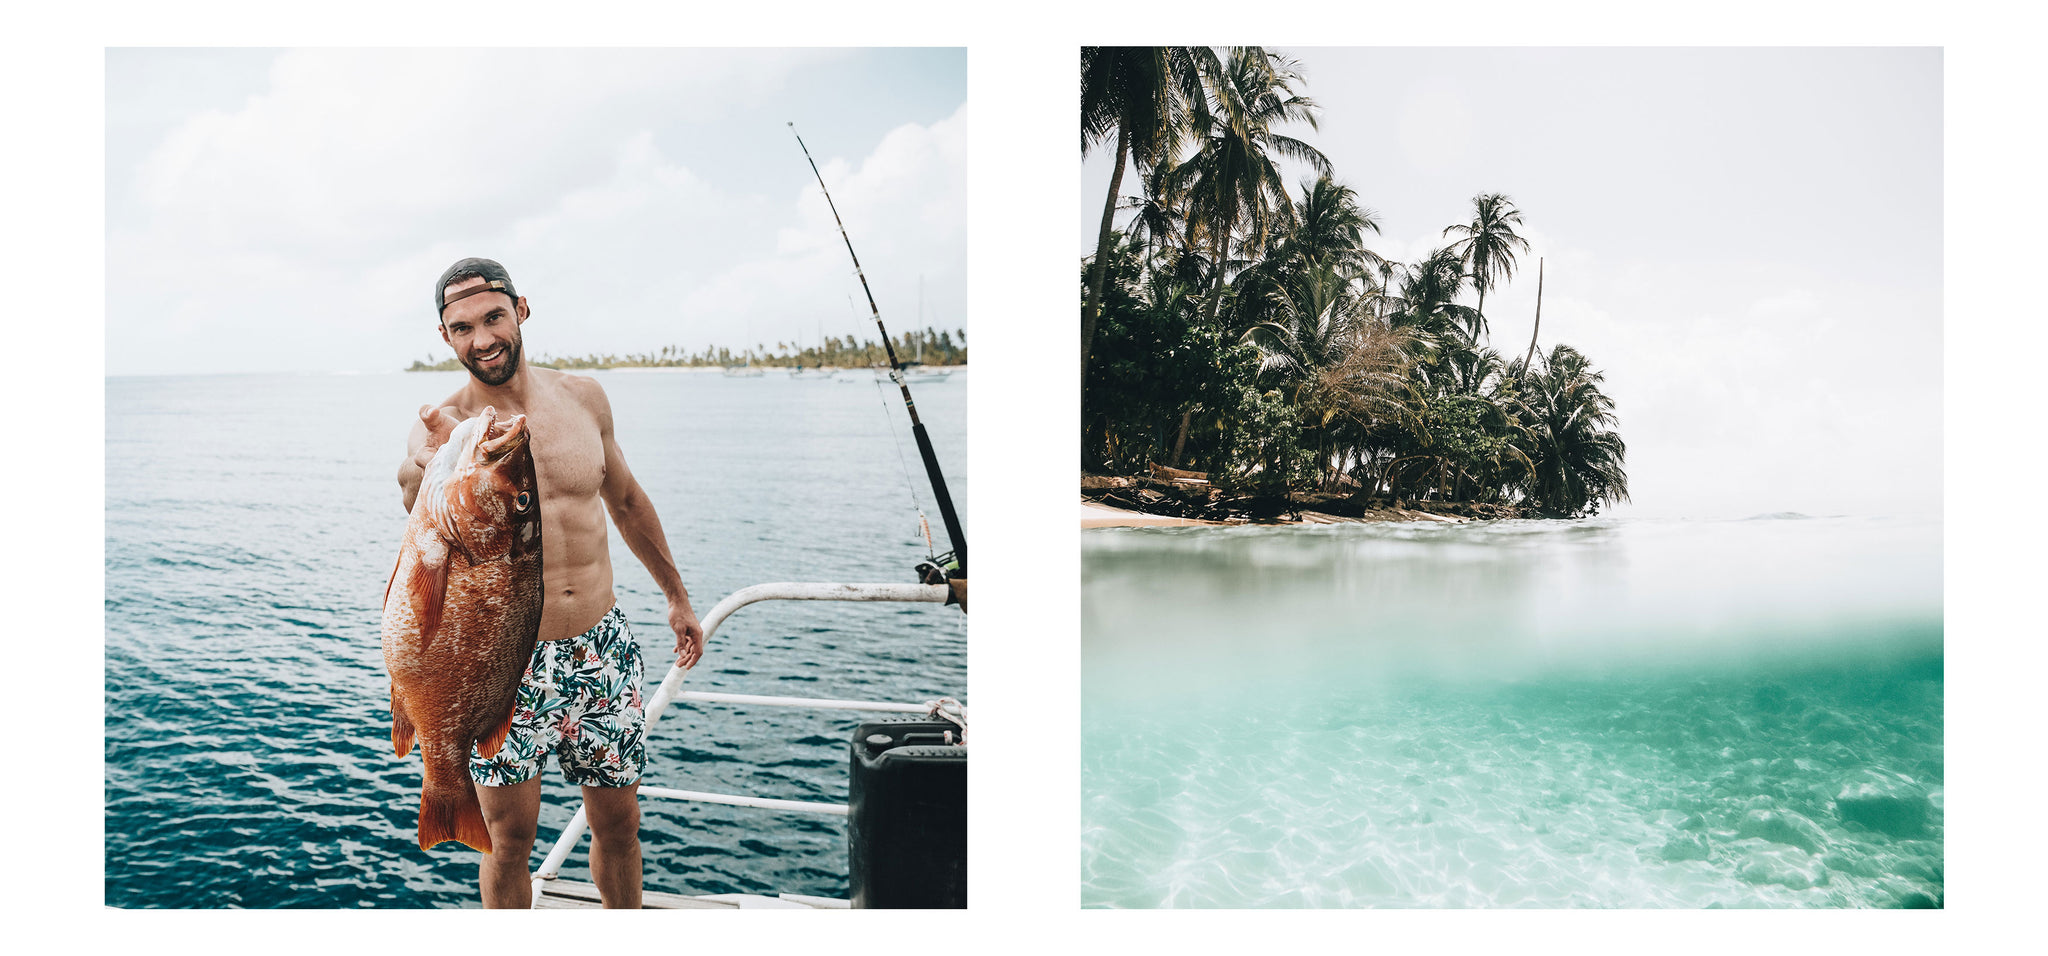 Michael Libis pescando y relajándose en una playa de Colombia